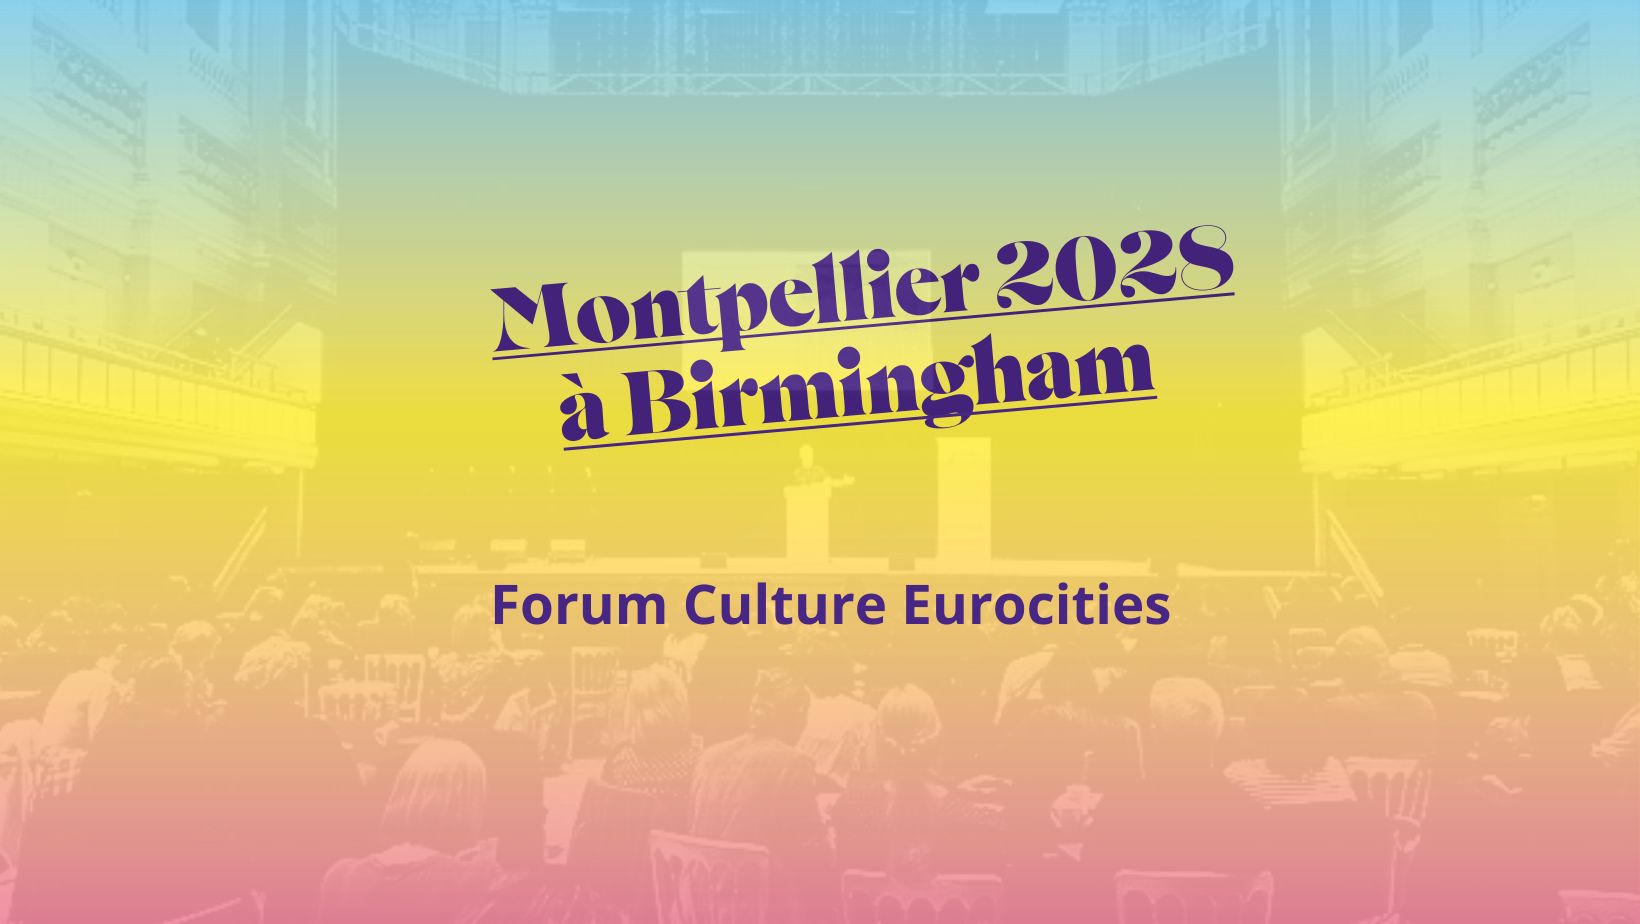 Montpellier 2028 au Forum Culture Eurocities à Birmingham !